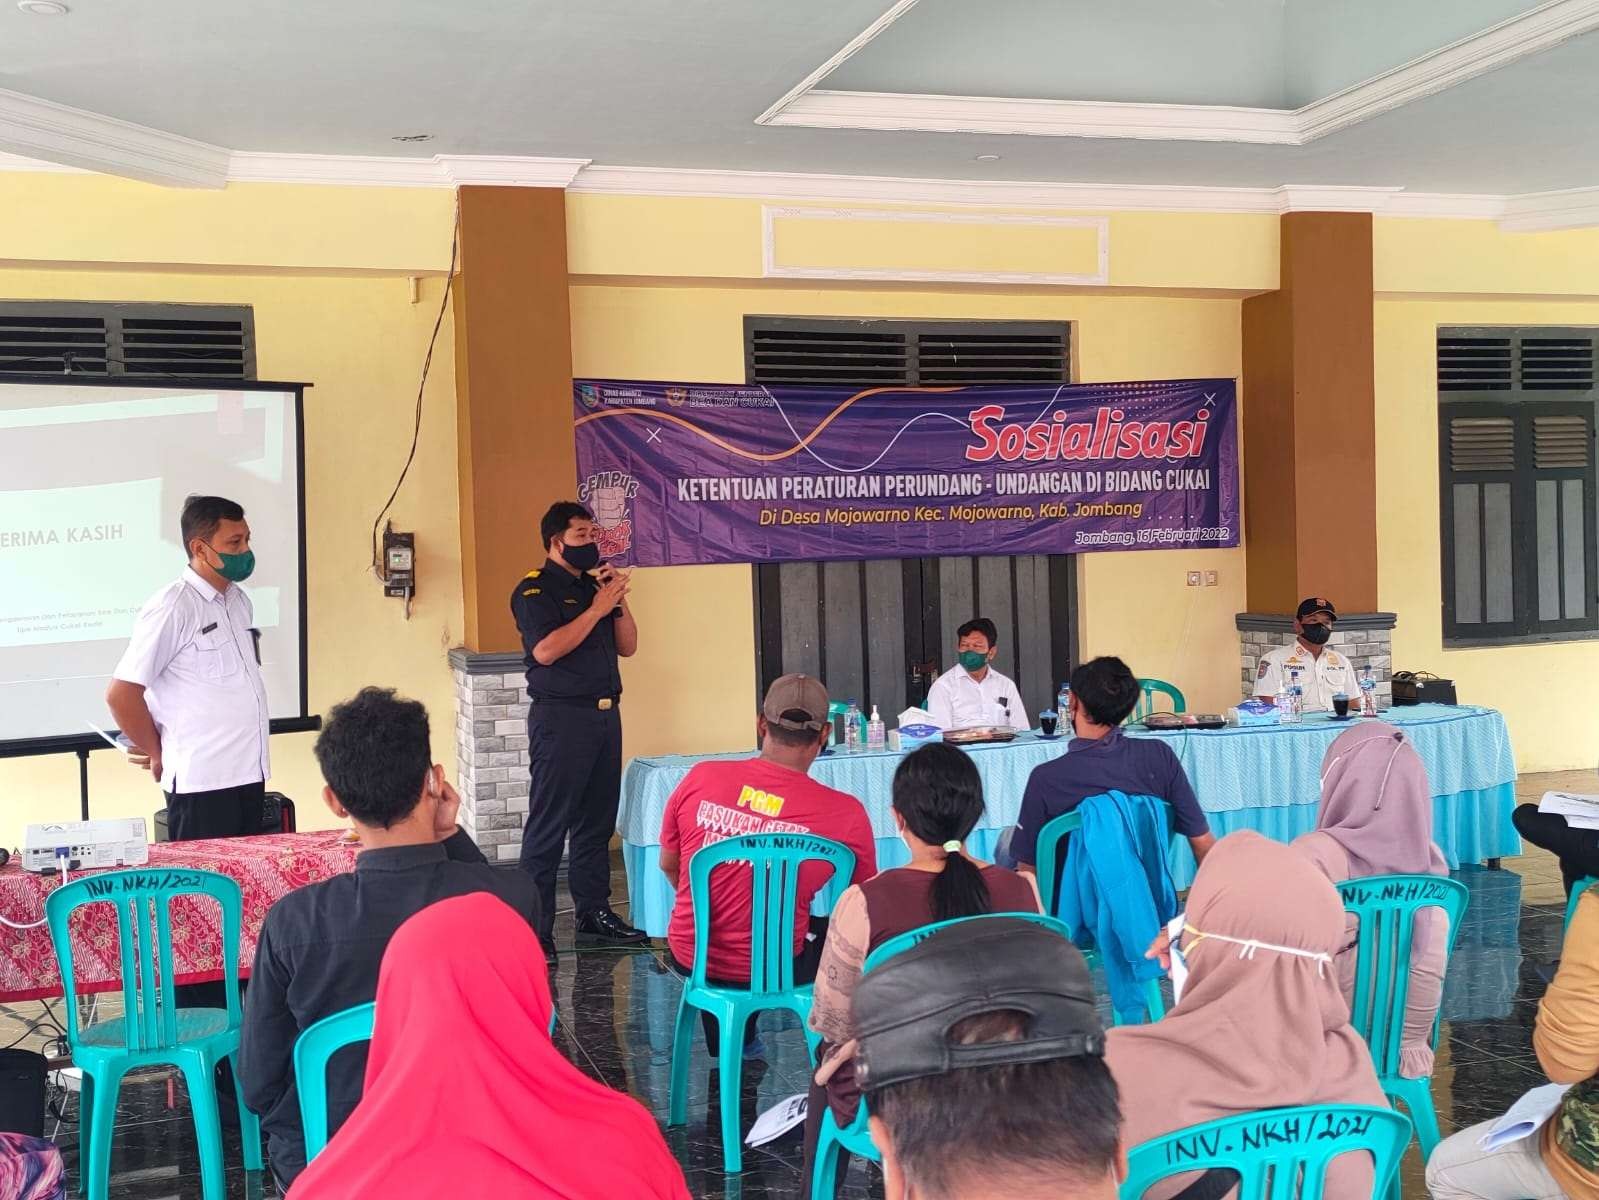 Sosialisasi Peraturan Bidang Cukai di Desa/Kecamatan Mojowarno, Rabu 16 Februari 2022. (Foto: Istimewa)